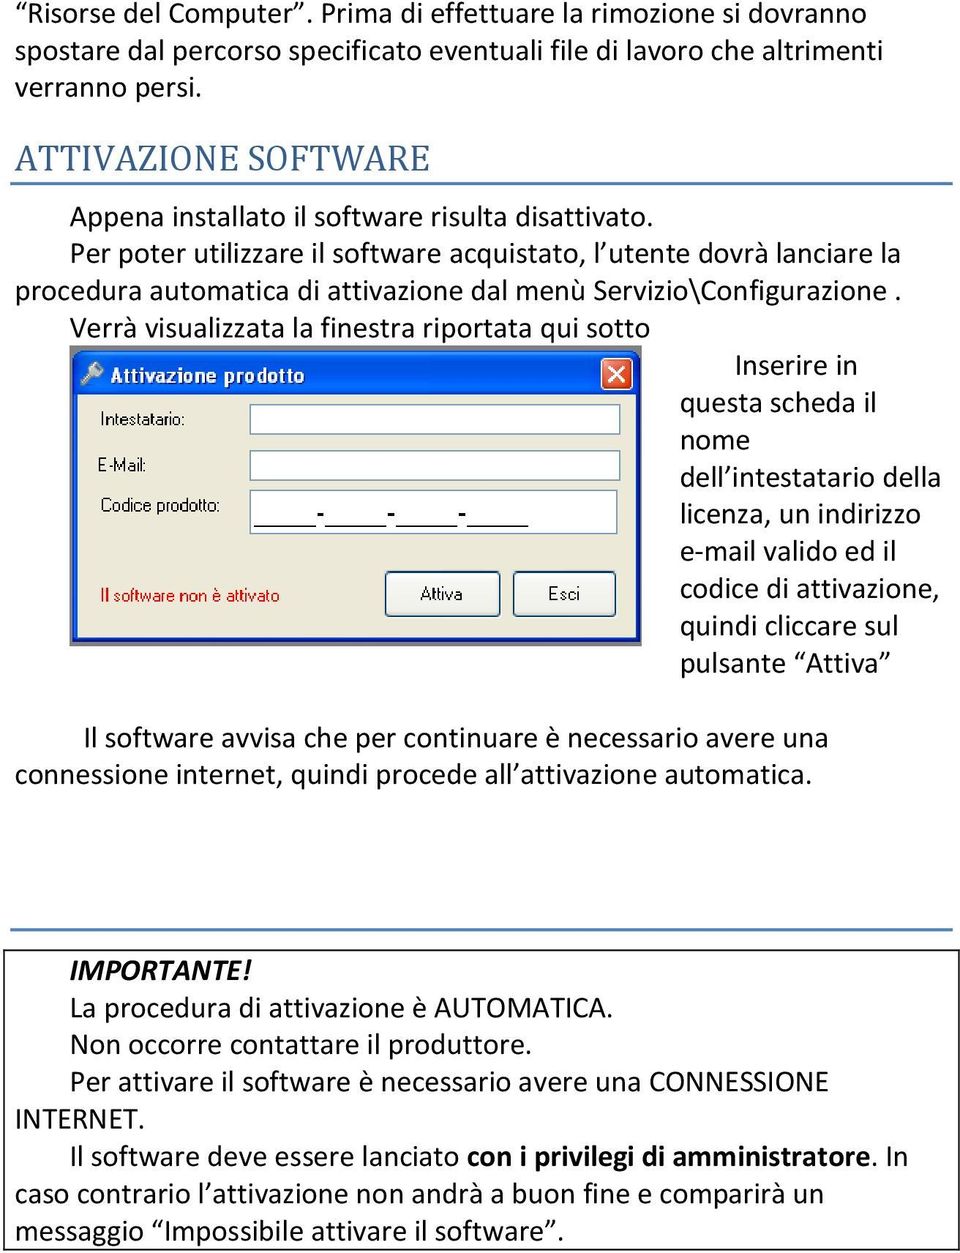 Per poter utilizzare il software acquistato, l utente dovrà lanciare la procedura automatica di attivazione dal menù Servizio\Configurazione.